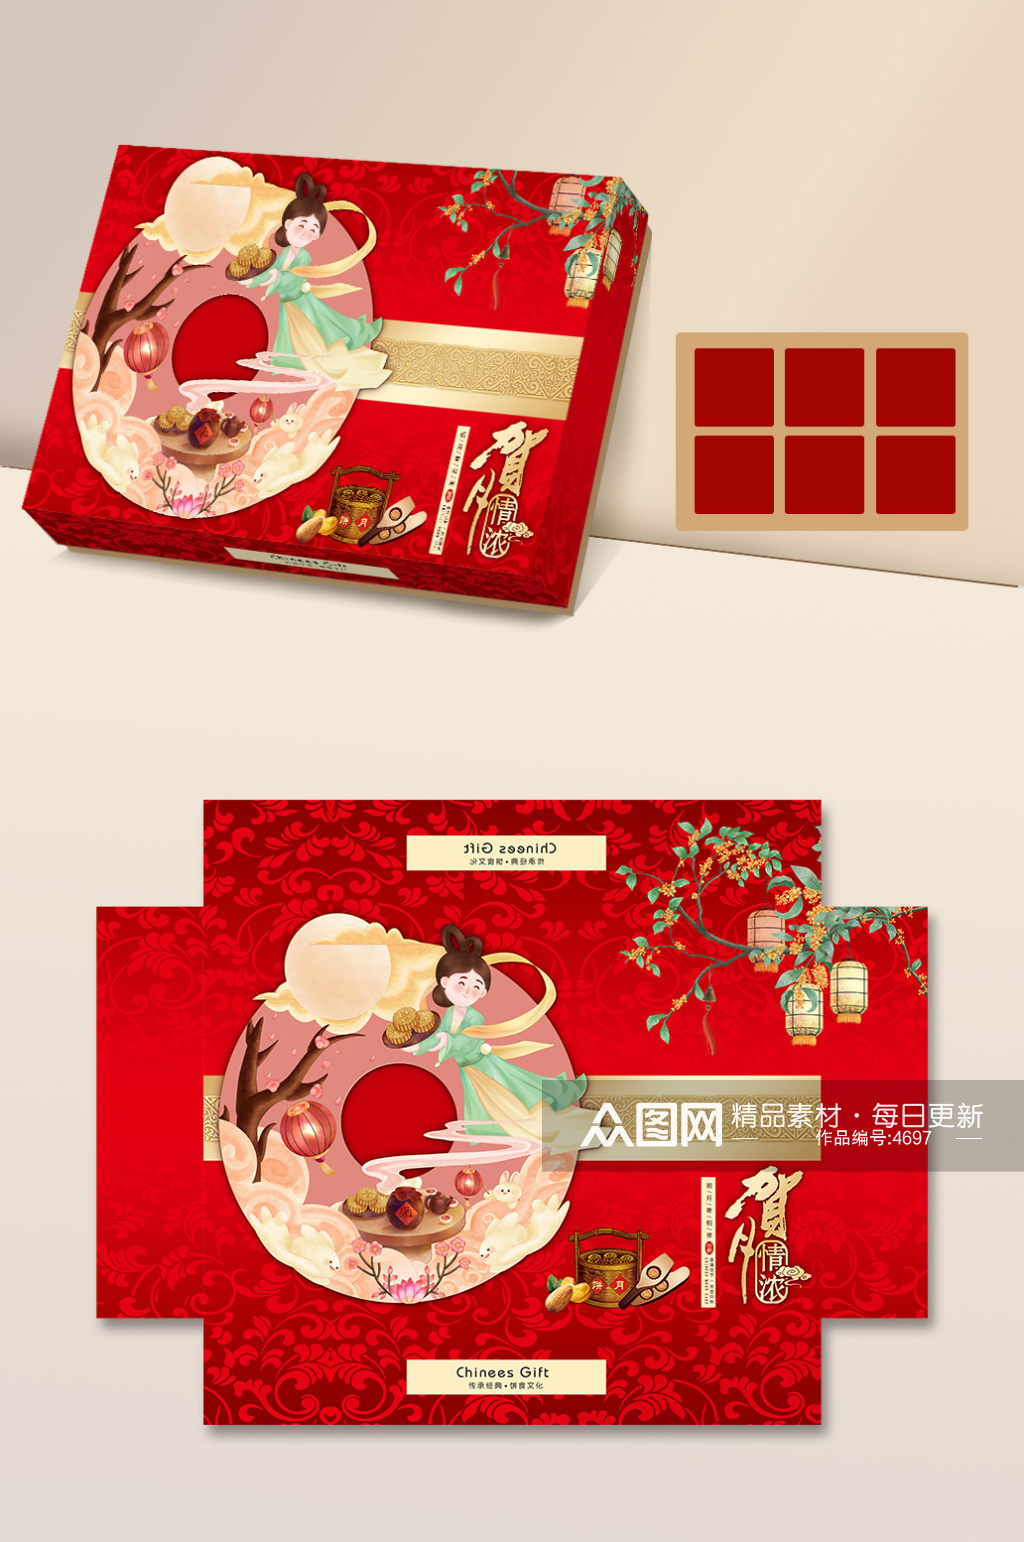 中秋节 原创手绘插画中秋节月饼礼盒包装设计中式礼品素材